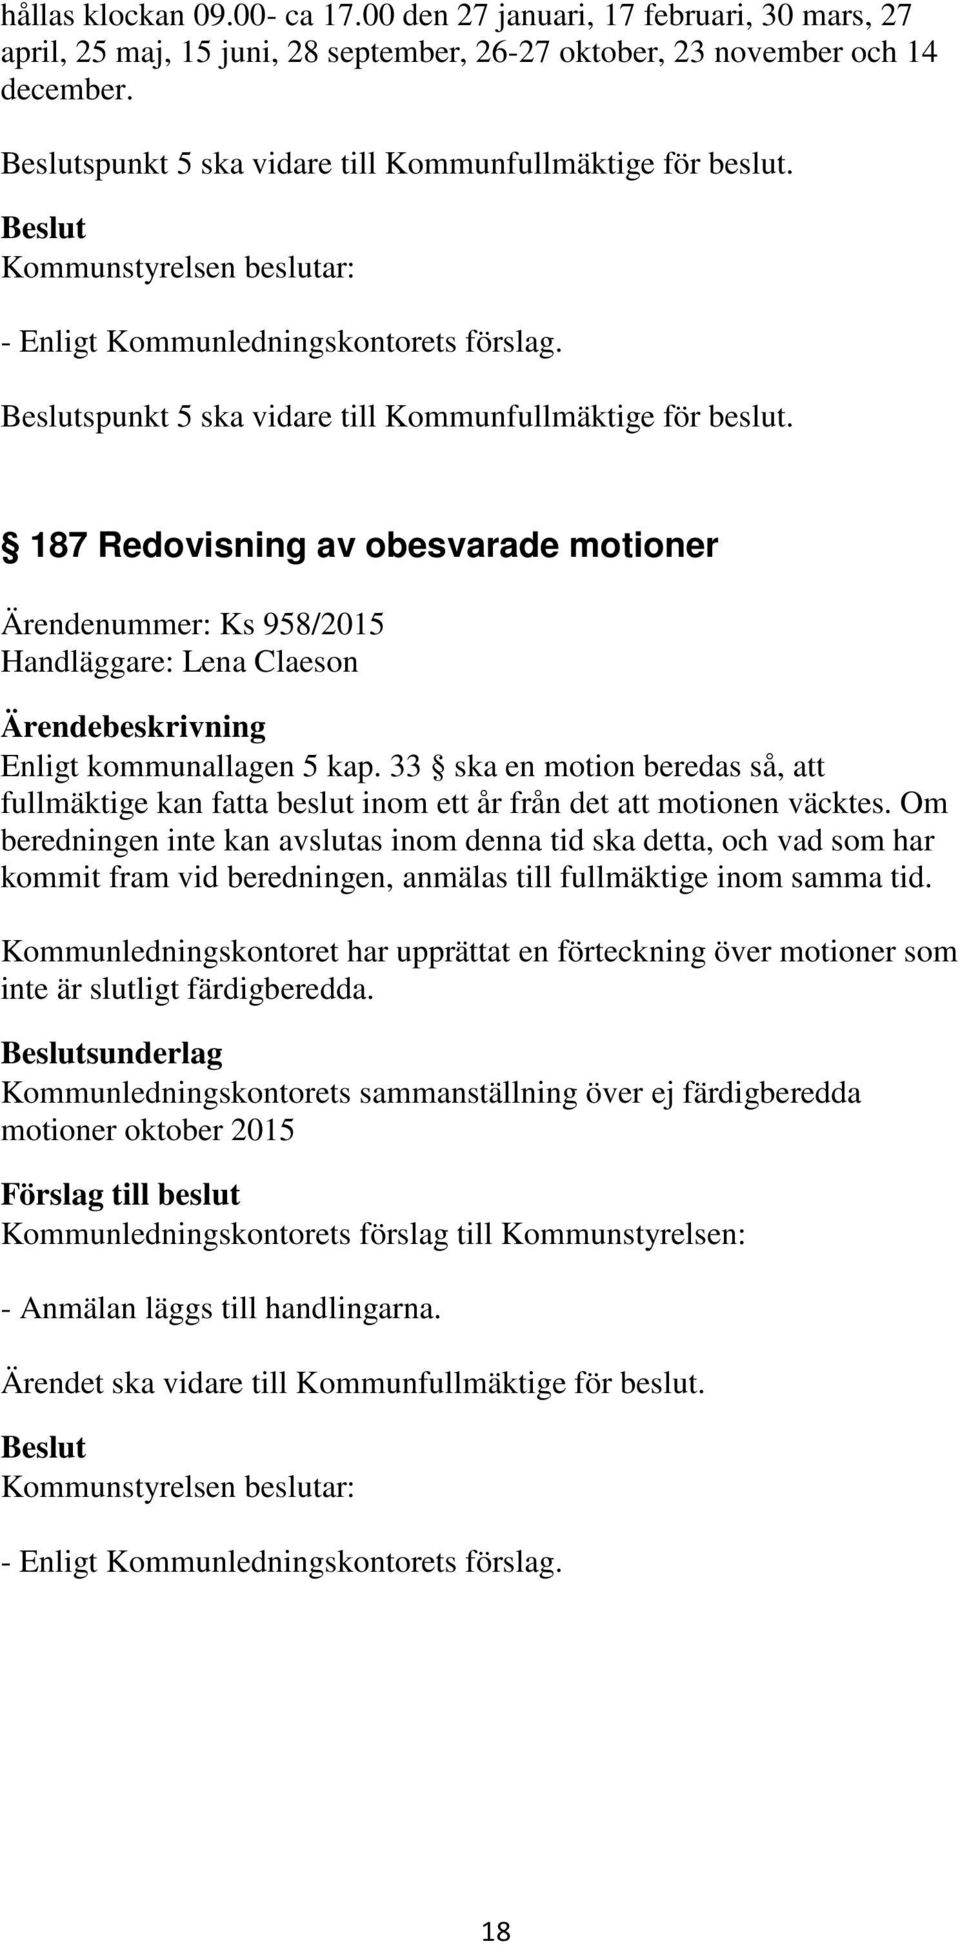 187 Redovisning av obesvarade motioner Ärendenummer: Ks 958/2015 Handläggare: Lena Claeson Enligt kommunallagen 5 kap.